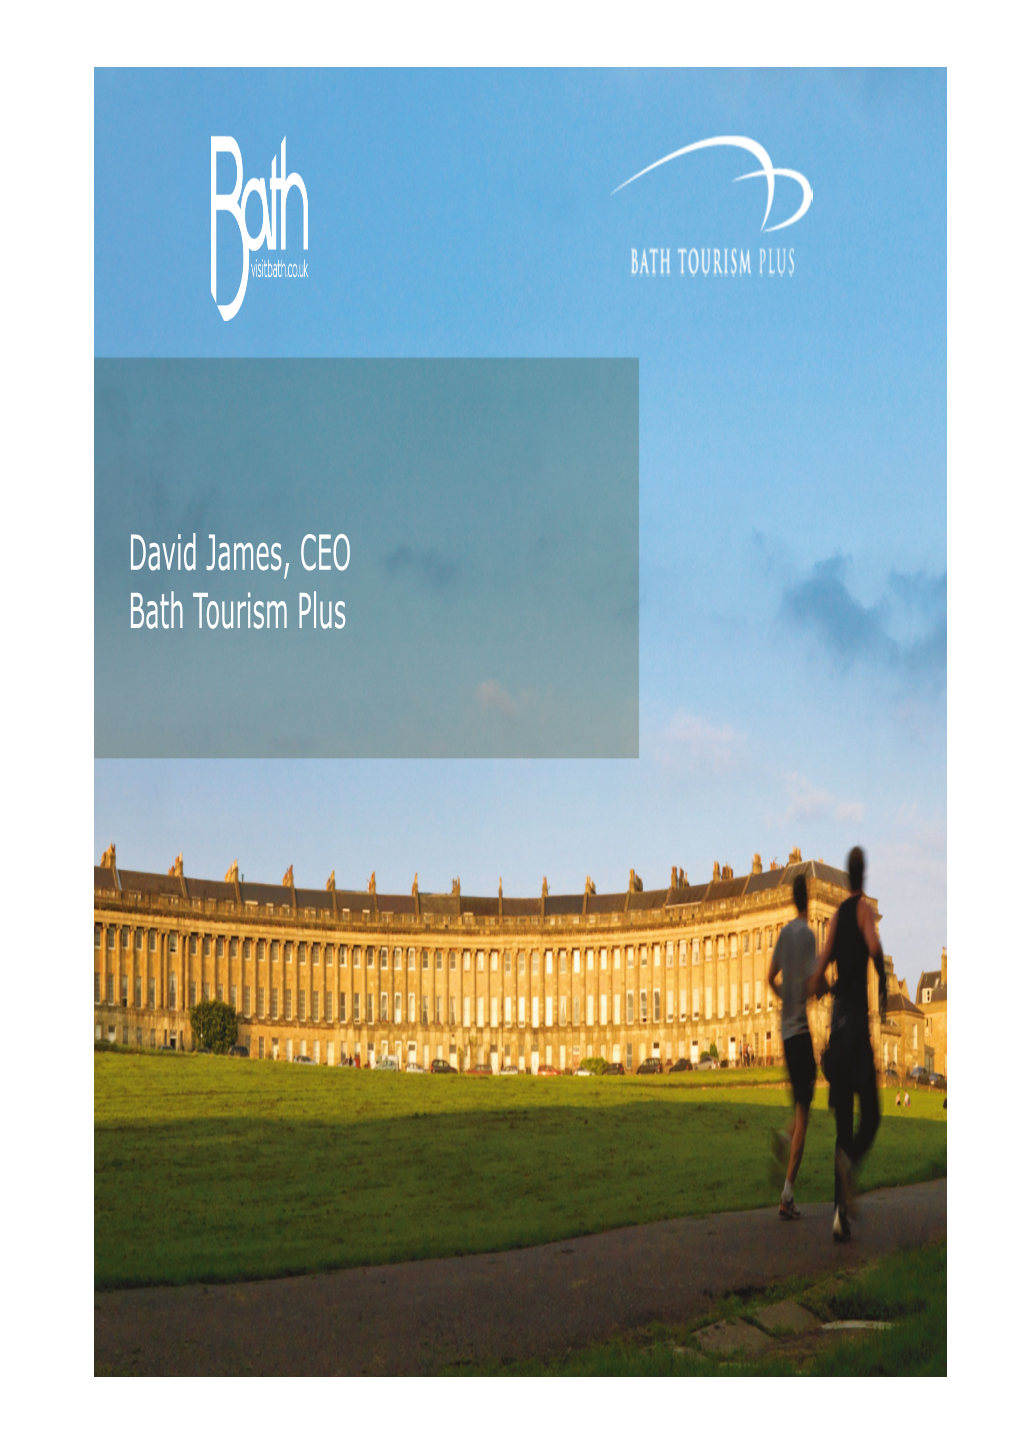 David James, CEO Bath Tourism Plus